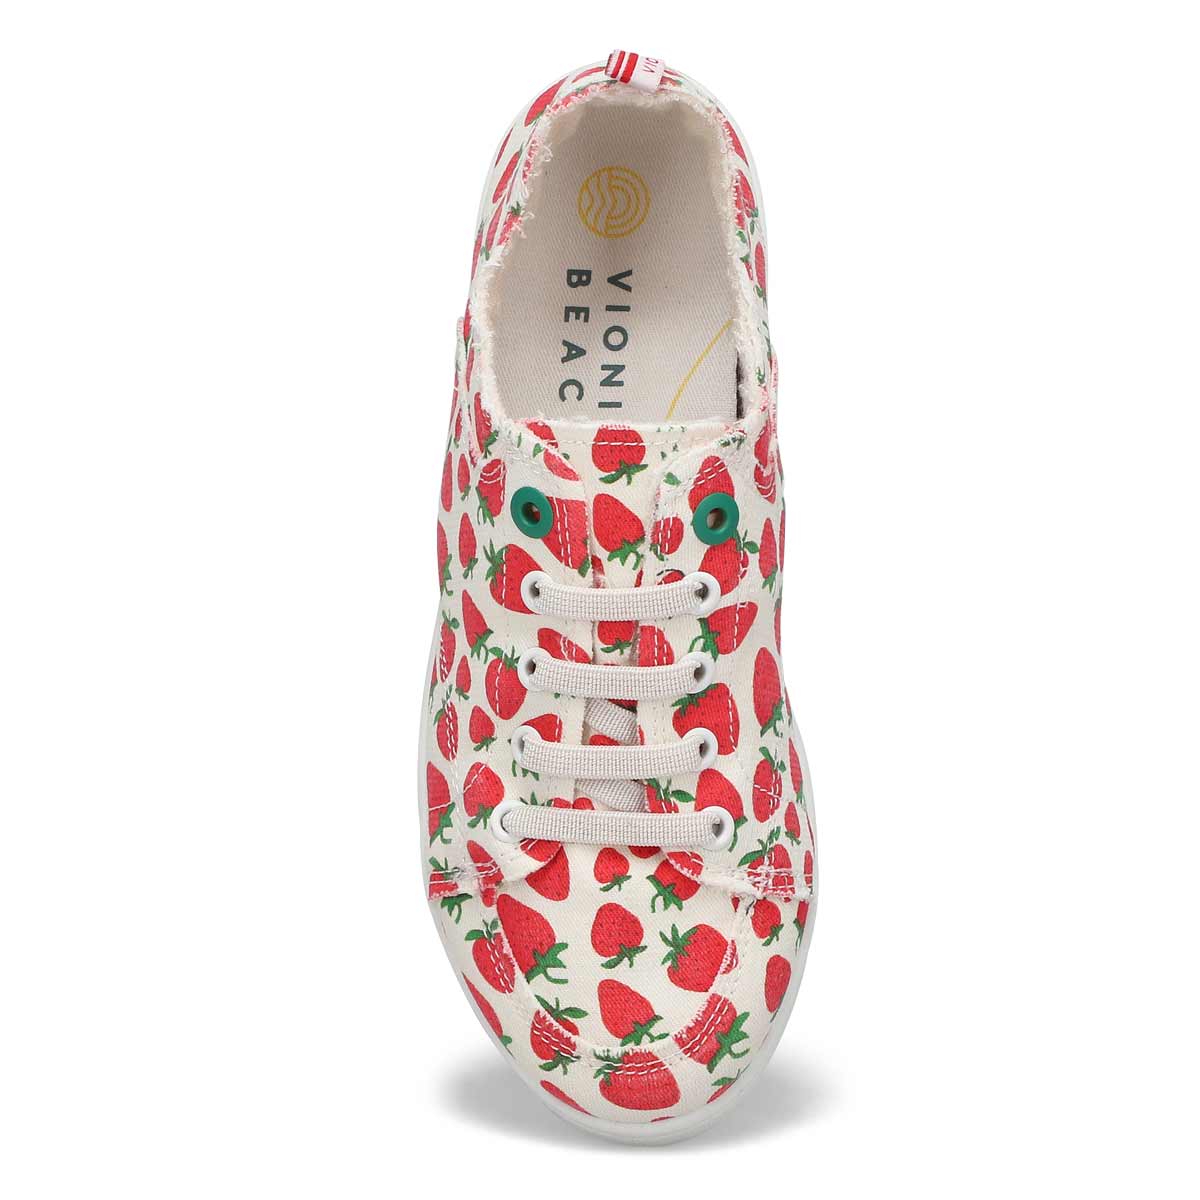 Women's Venice Pismo Sneaker - Strawberry